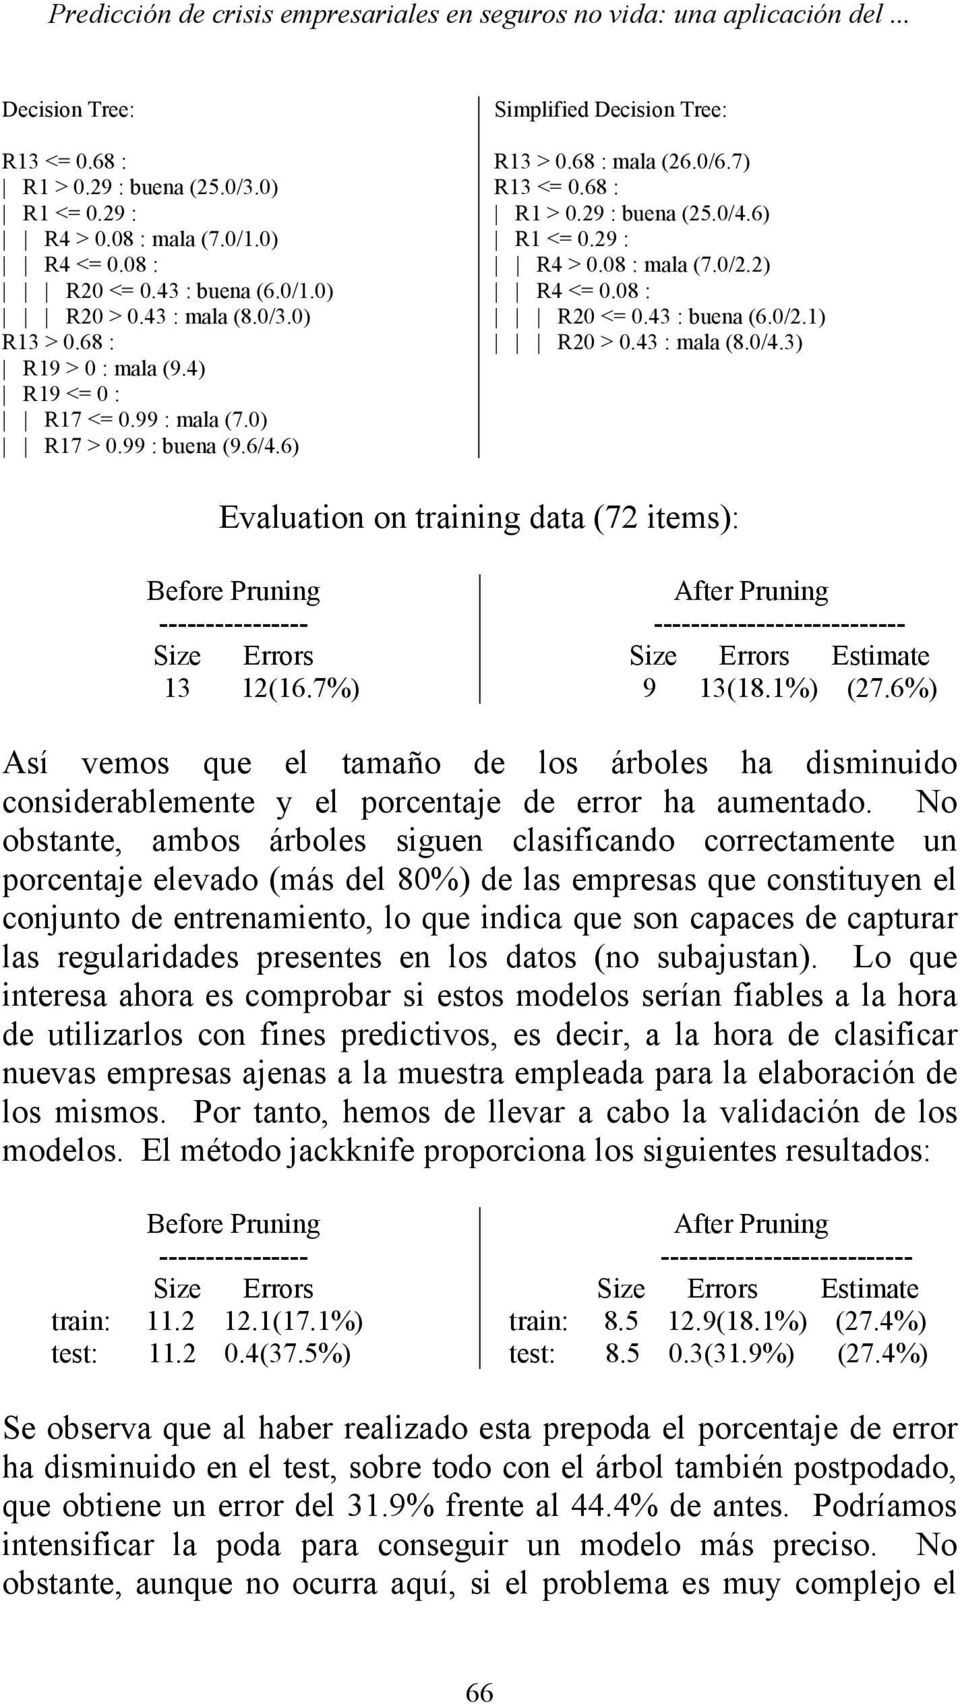 7) R13 <= 0.68 : R1 > 0.29 : buena (25.0/4.6) R1 <= 0.29 : R4 > 0.08 : mala (7.0/2.2) R4 <= 0.08 : R20 <= 0.43 : buena (6.0/2.1) R20 > 0.43 : mala (8.0/4.3) Evaluation on training data (72 items): Before Pruning ---------------- Size Errors 13 12(16.